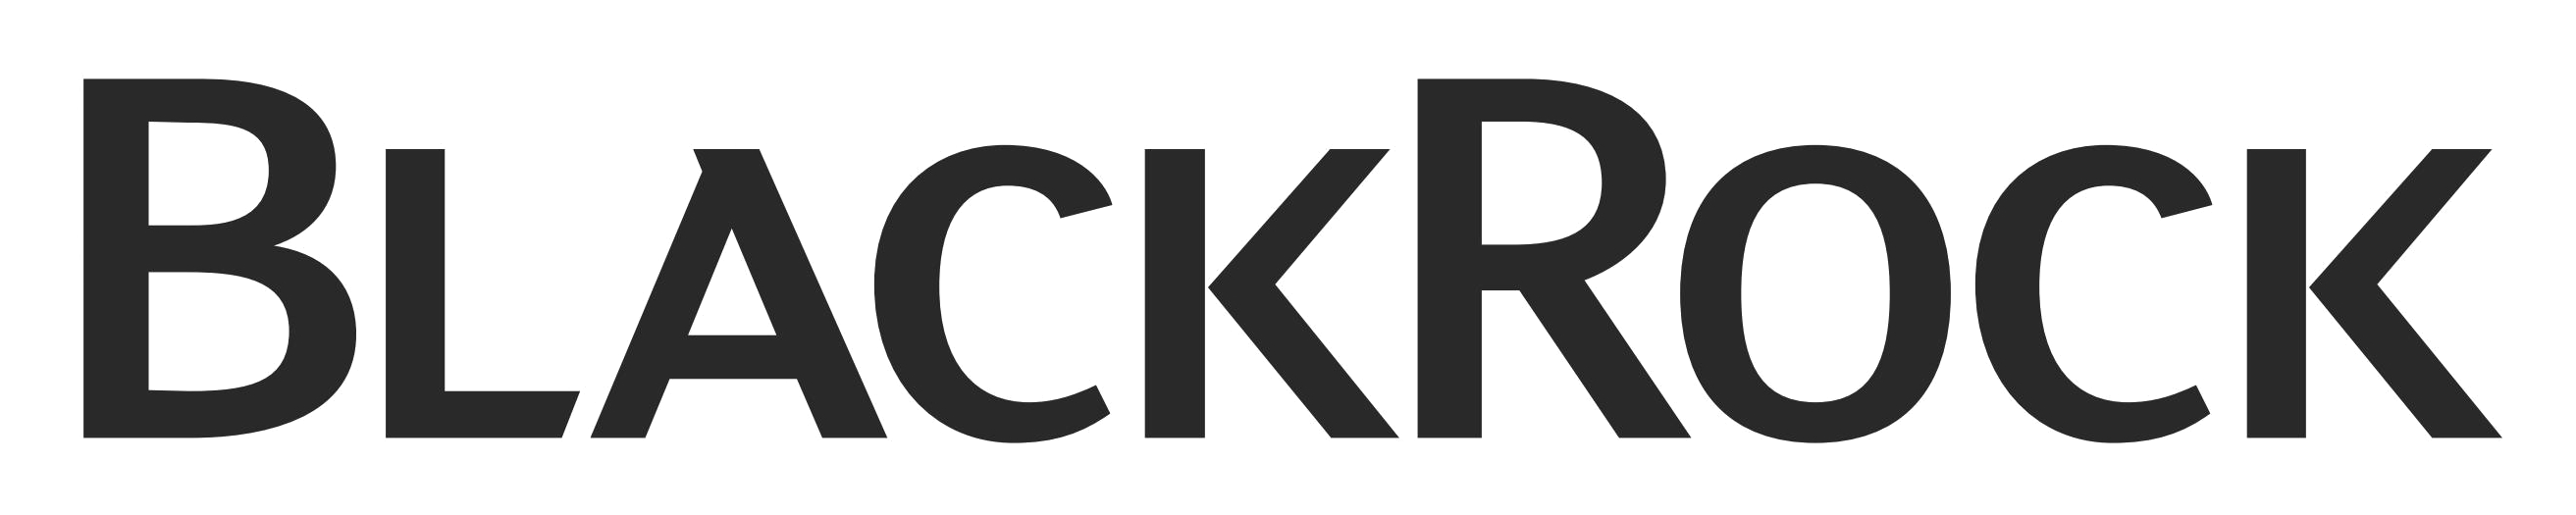 BlackRock Logo PNG Image